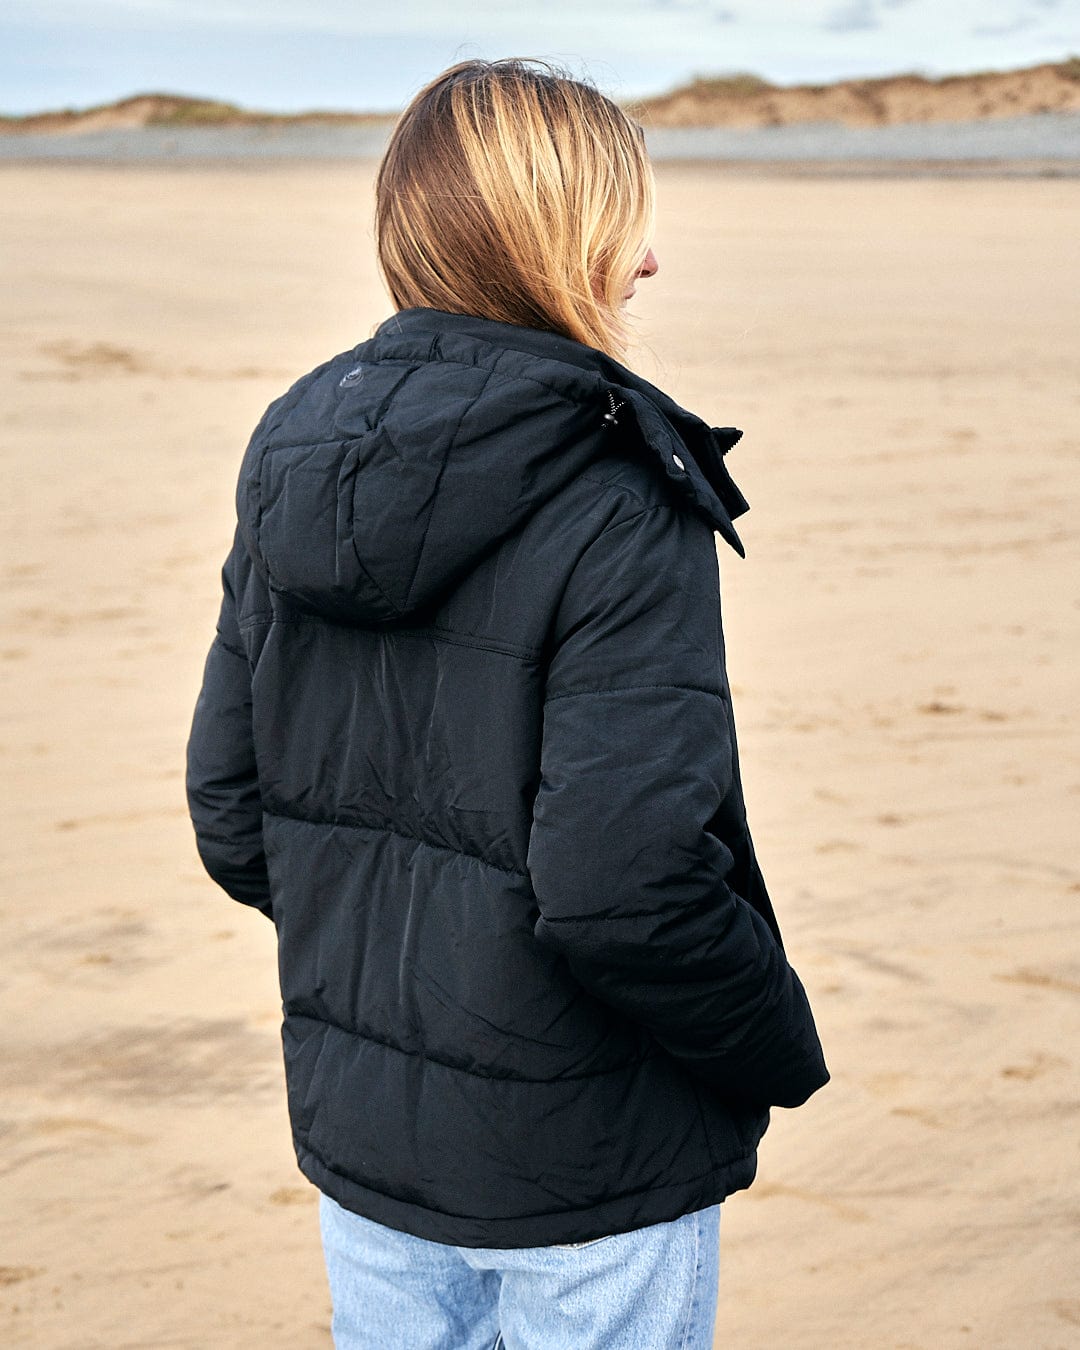 A woman standing on the beach wearing a Saltrock Aspen - Womens Short Puffer Jacket - Black.